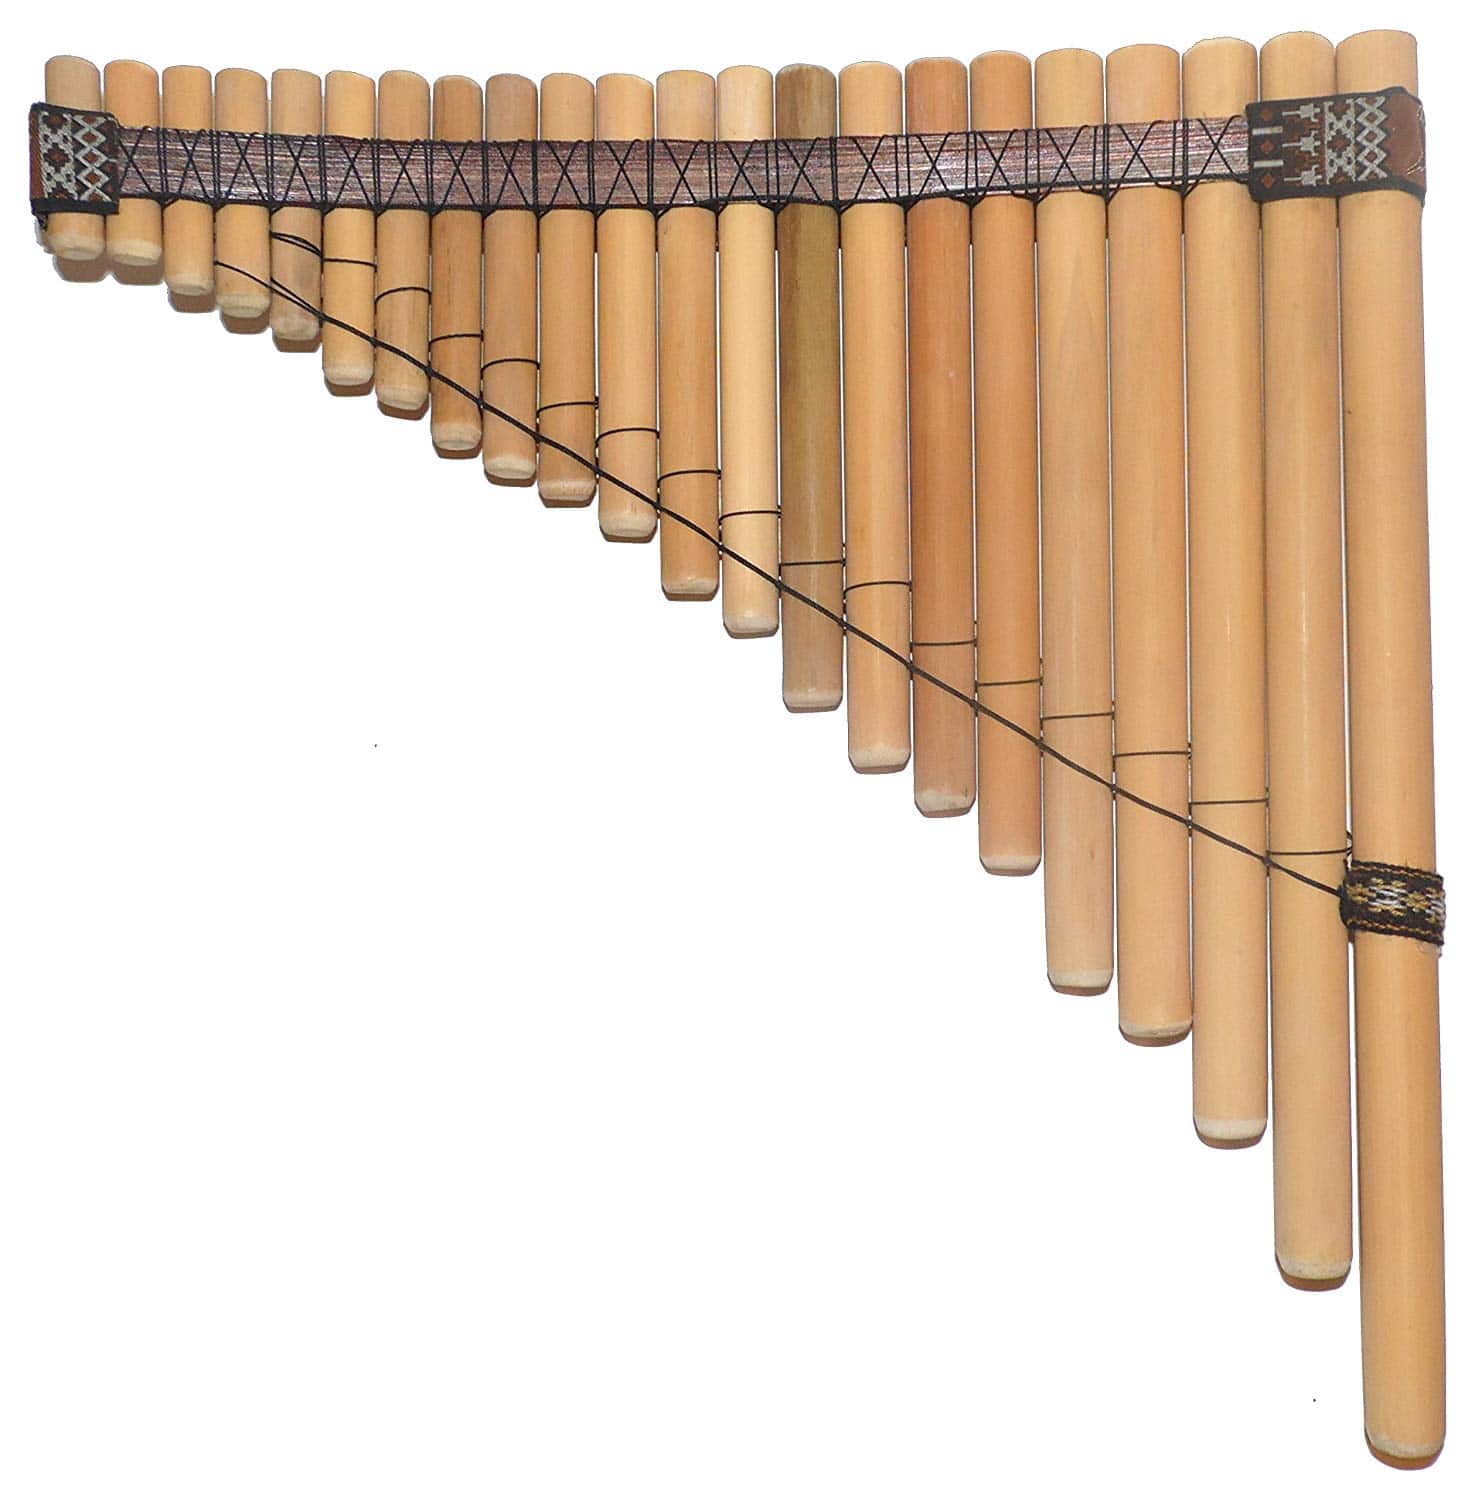 Pan flute. Панфлейта, «флейта пана». Кугиклы ( кувиклы, кувички. Кугиклы духовой музыкальный инструмент. Русские народные инструменты кугиклы.